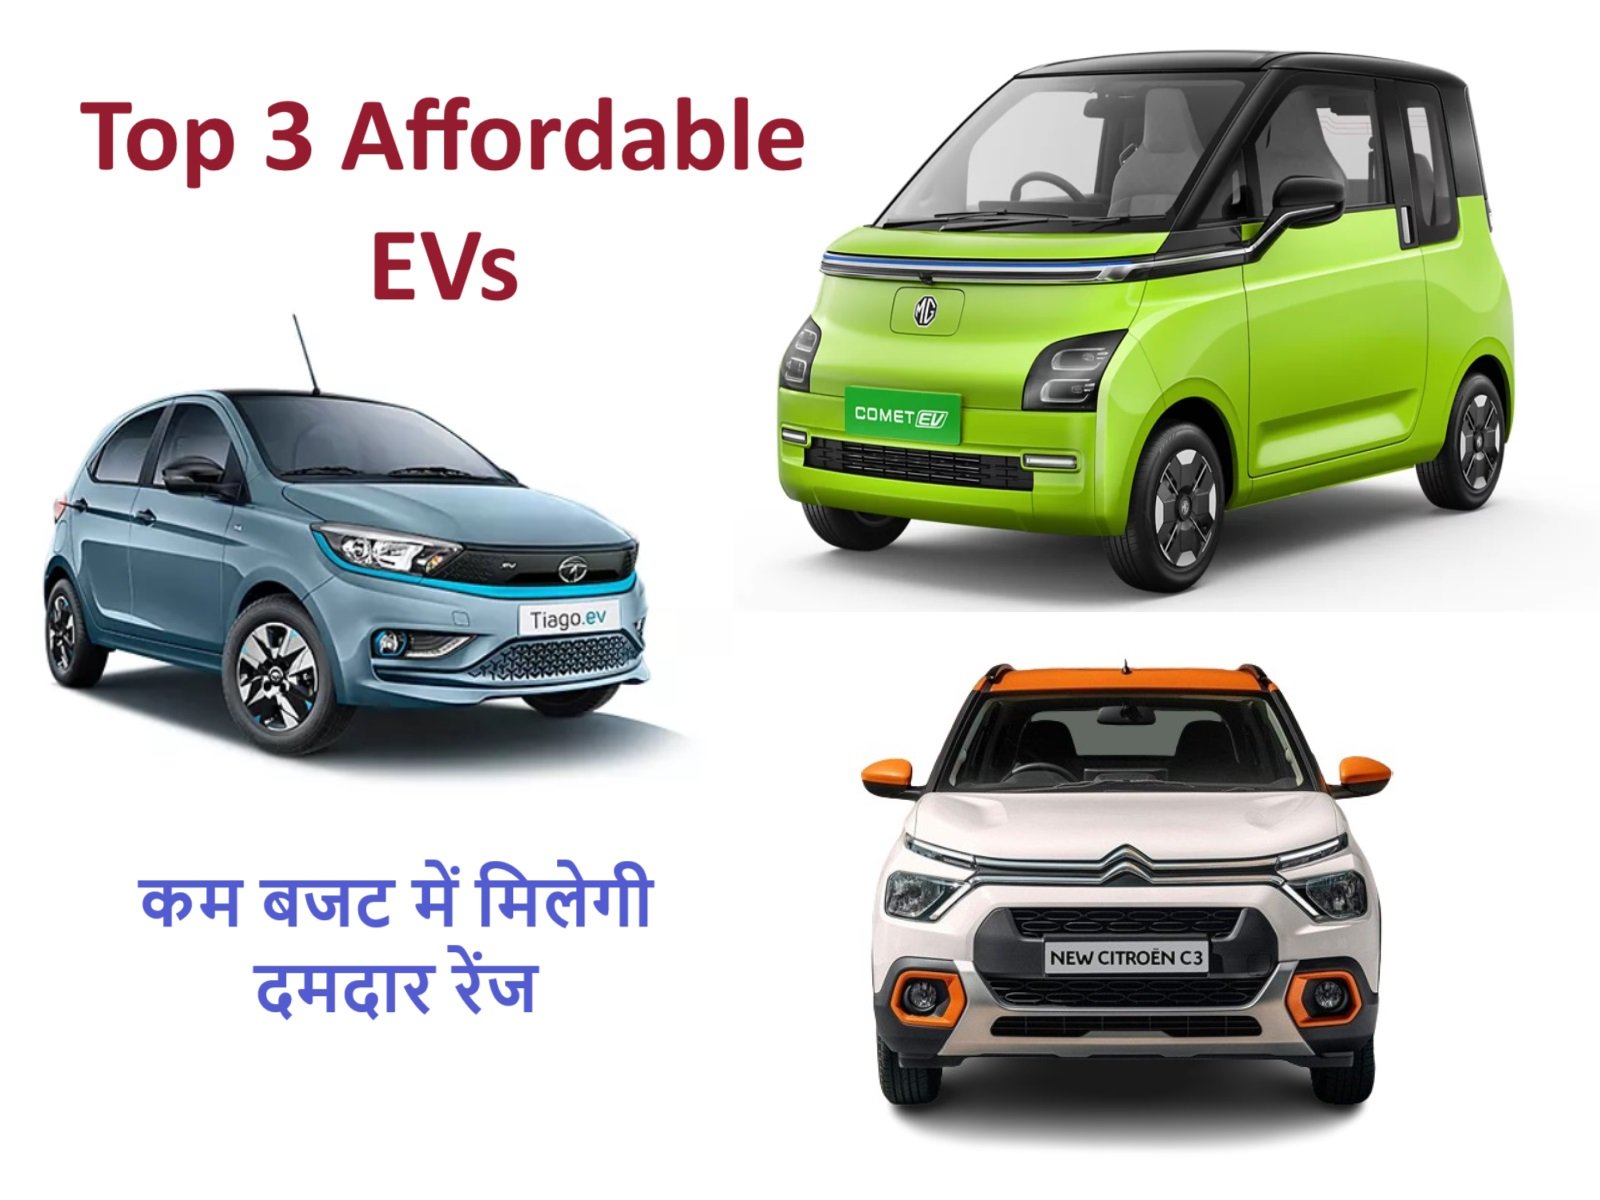 Top 3 Affordable EVs - कम बजट और दमदार रेंज देती है ये 3 धाकड़ इलेक्ट्रिक कार,